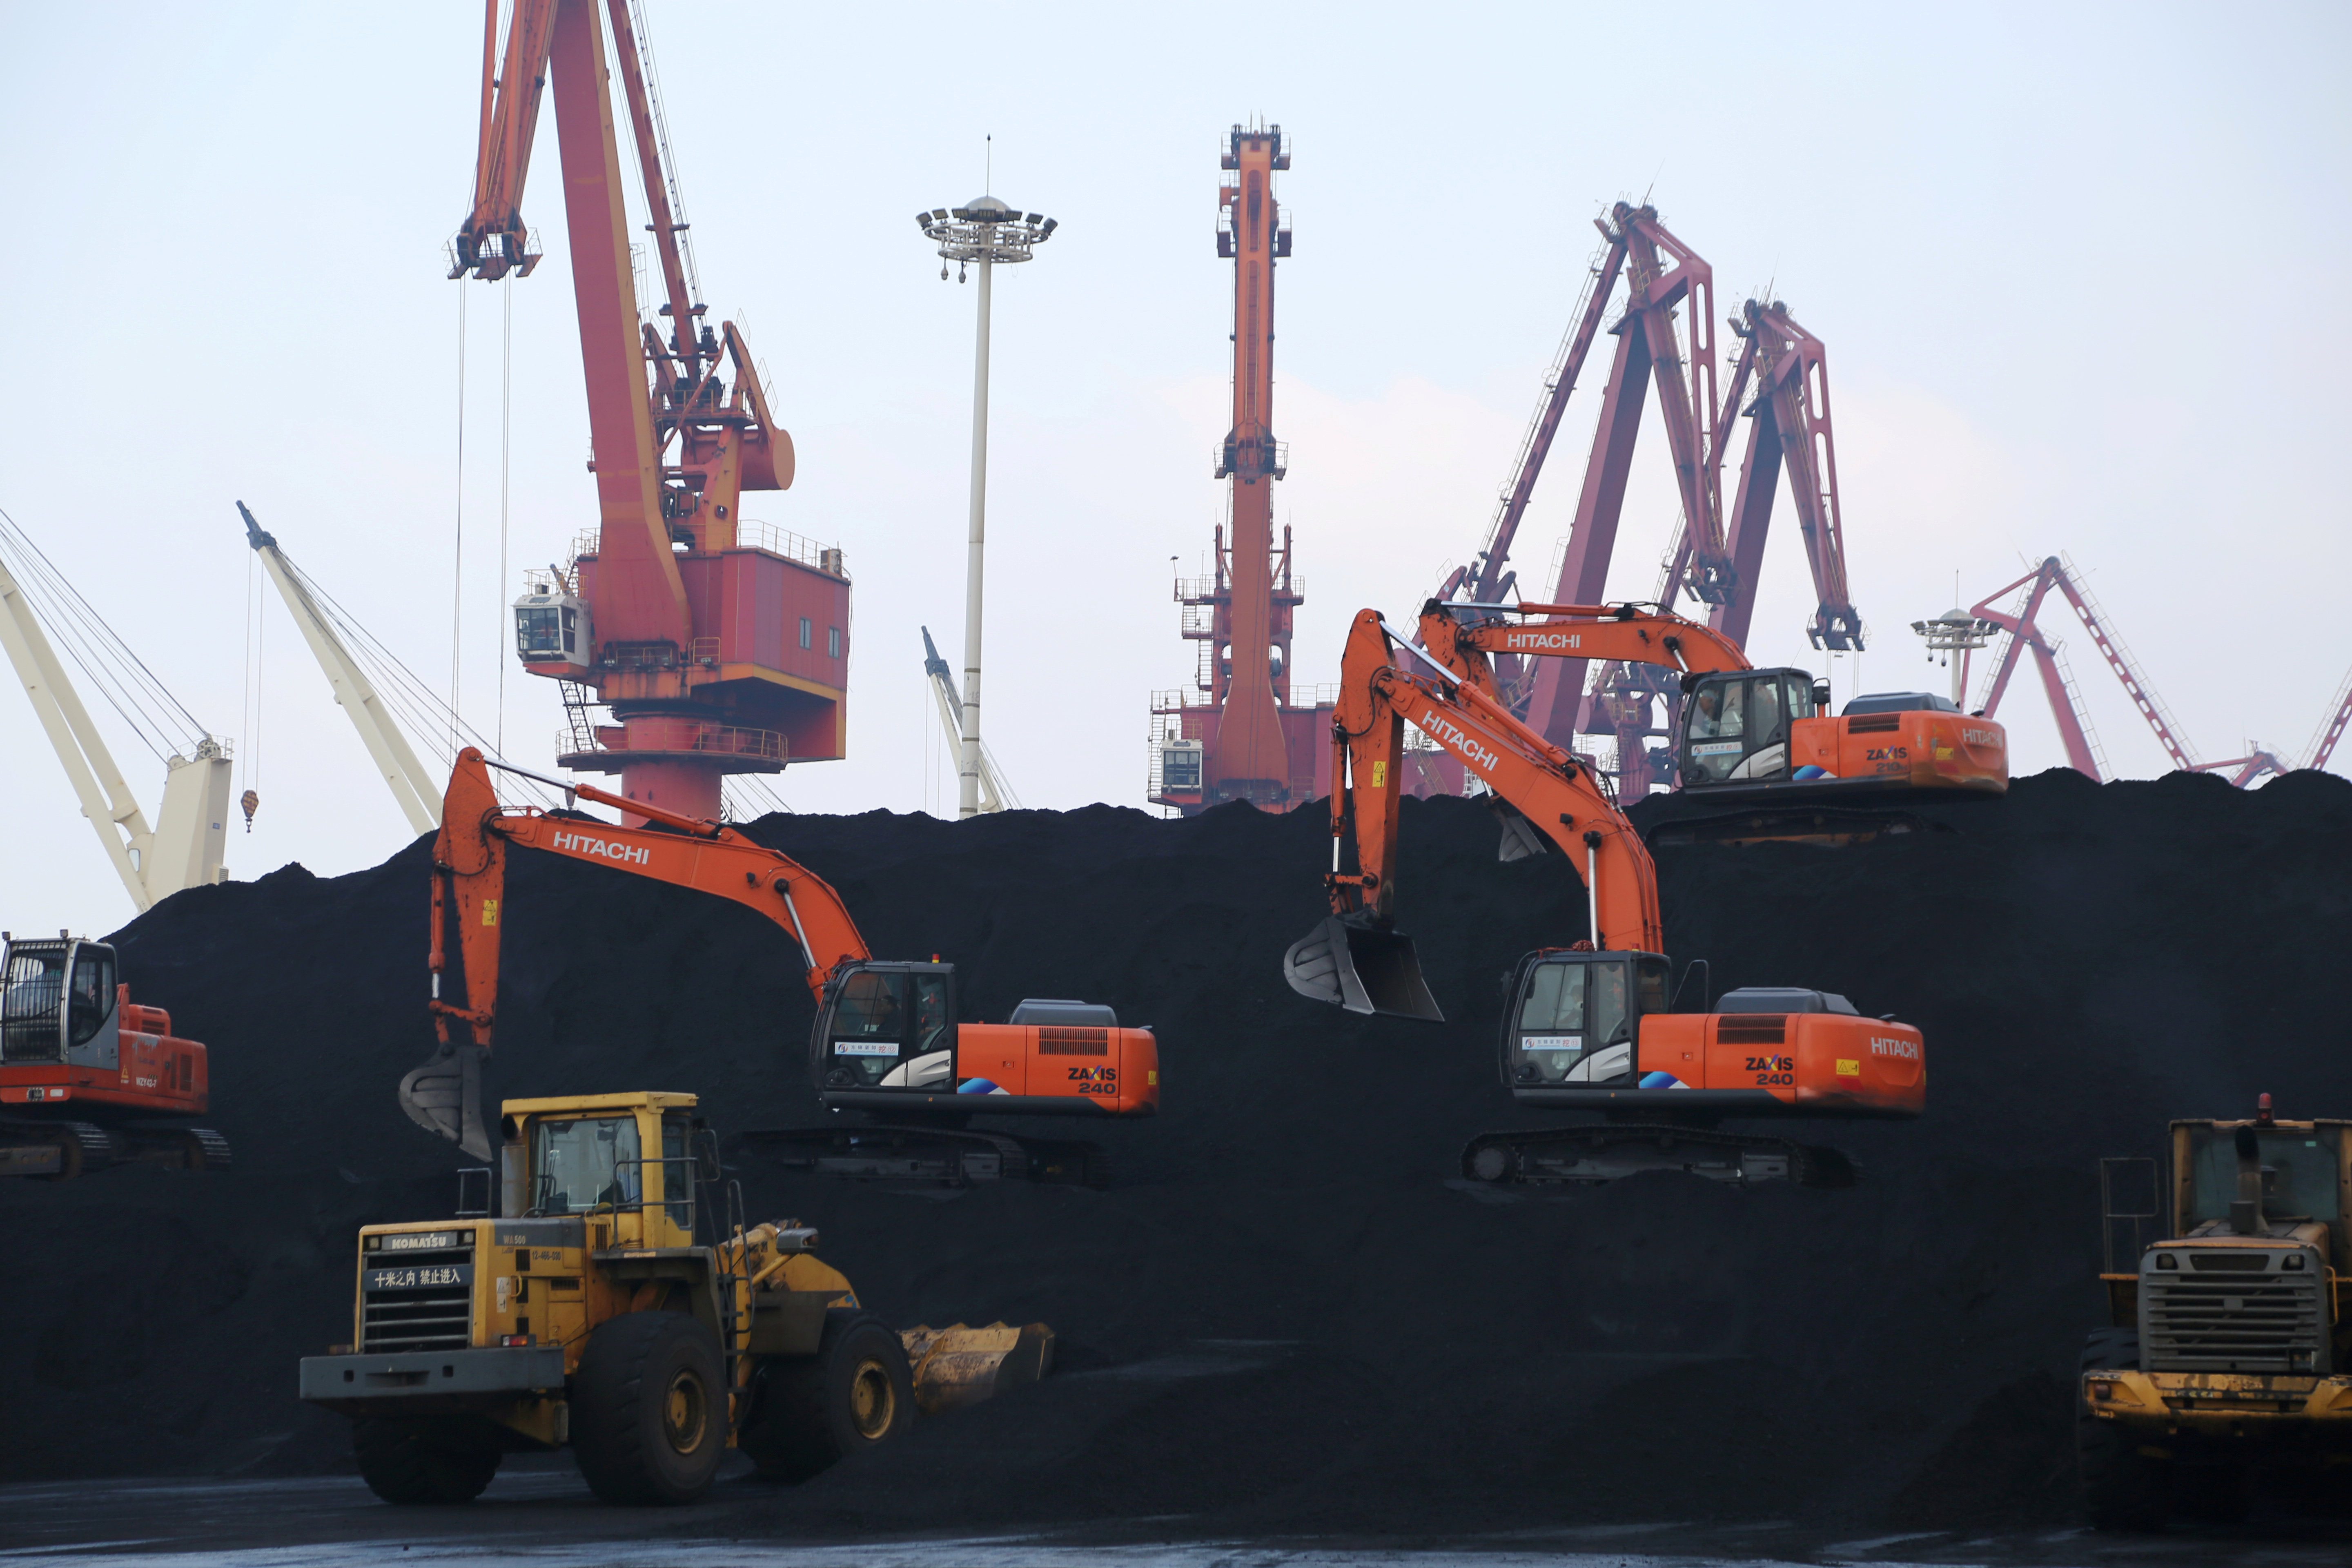 FOTO DE ARCHIVO: Trabajadores descargan carbón importado en un puerto en Lianyungang, provincia de Jiangsu, China, 5 de diciembre de 2019 (REUTERS / Stringer / Foto de archivo)